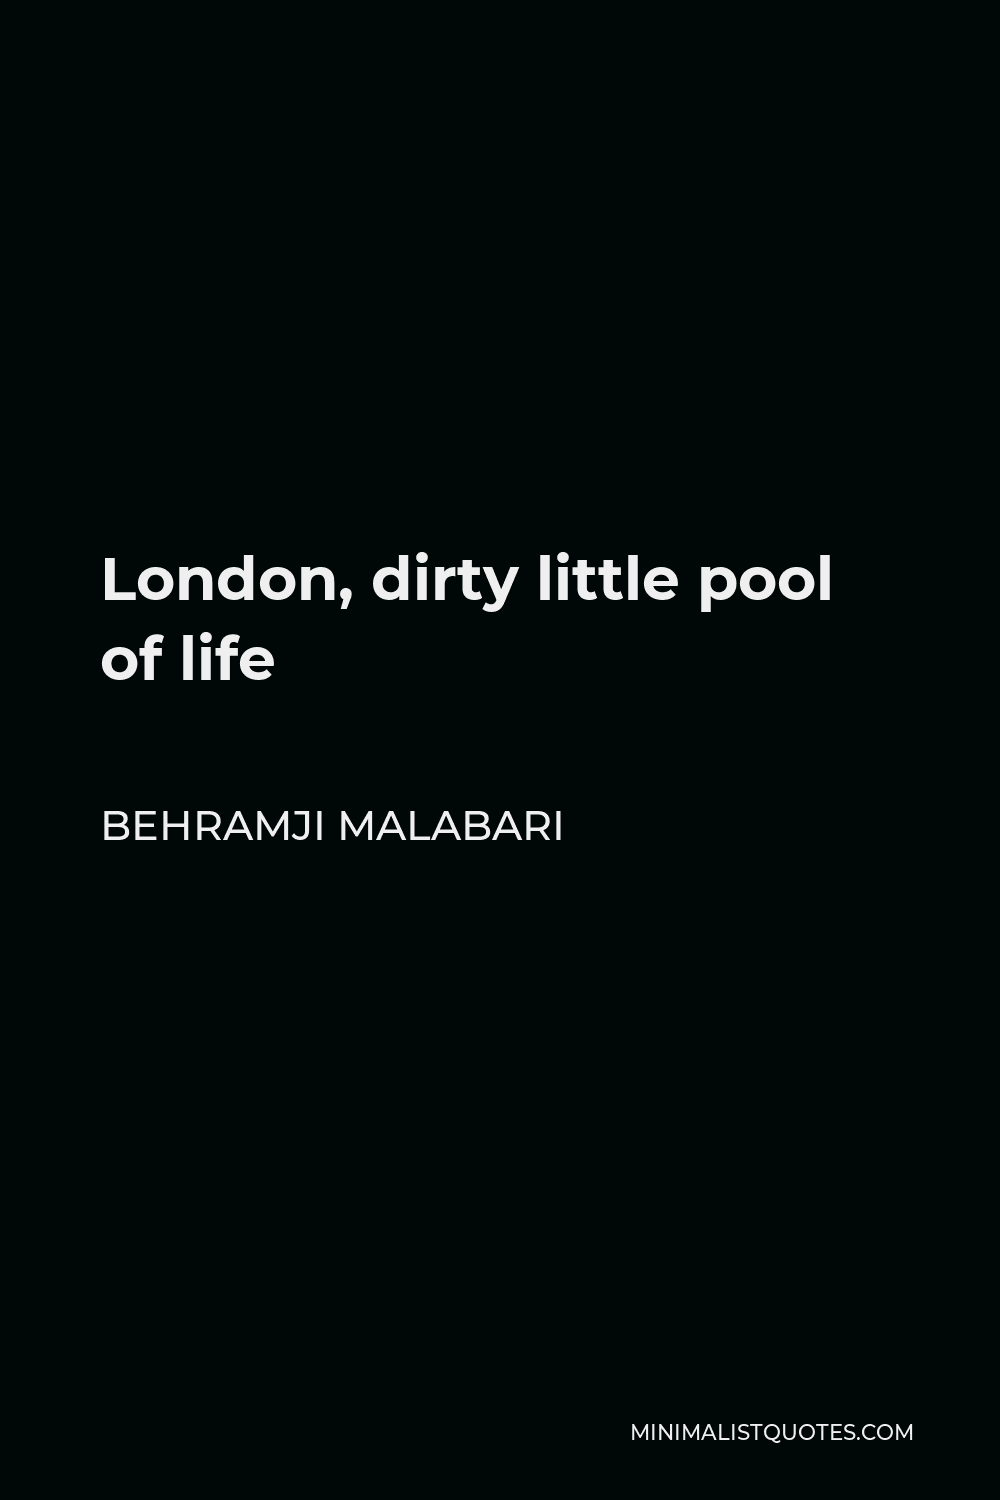 Behramji Malabari Quote - London, dirty little pool of life